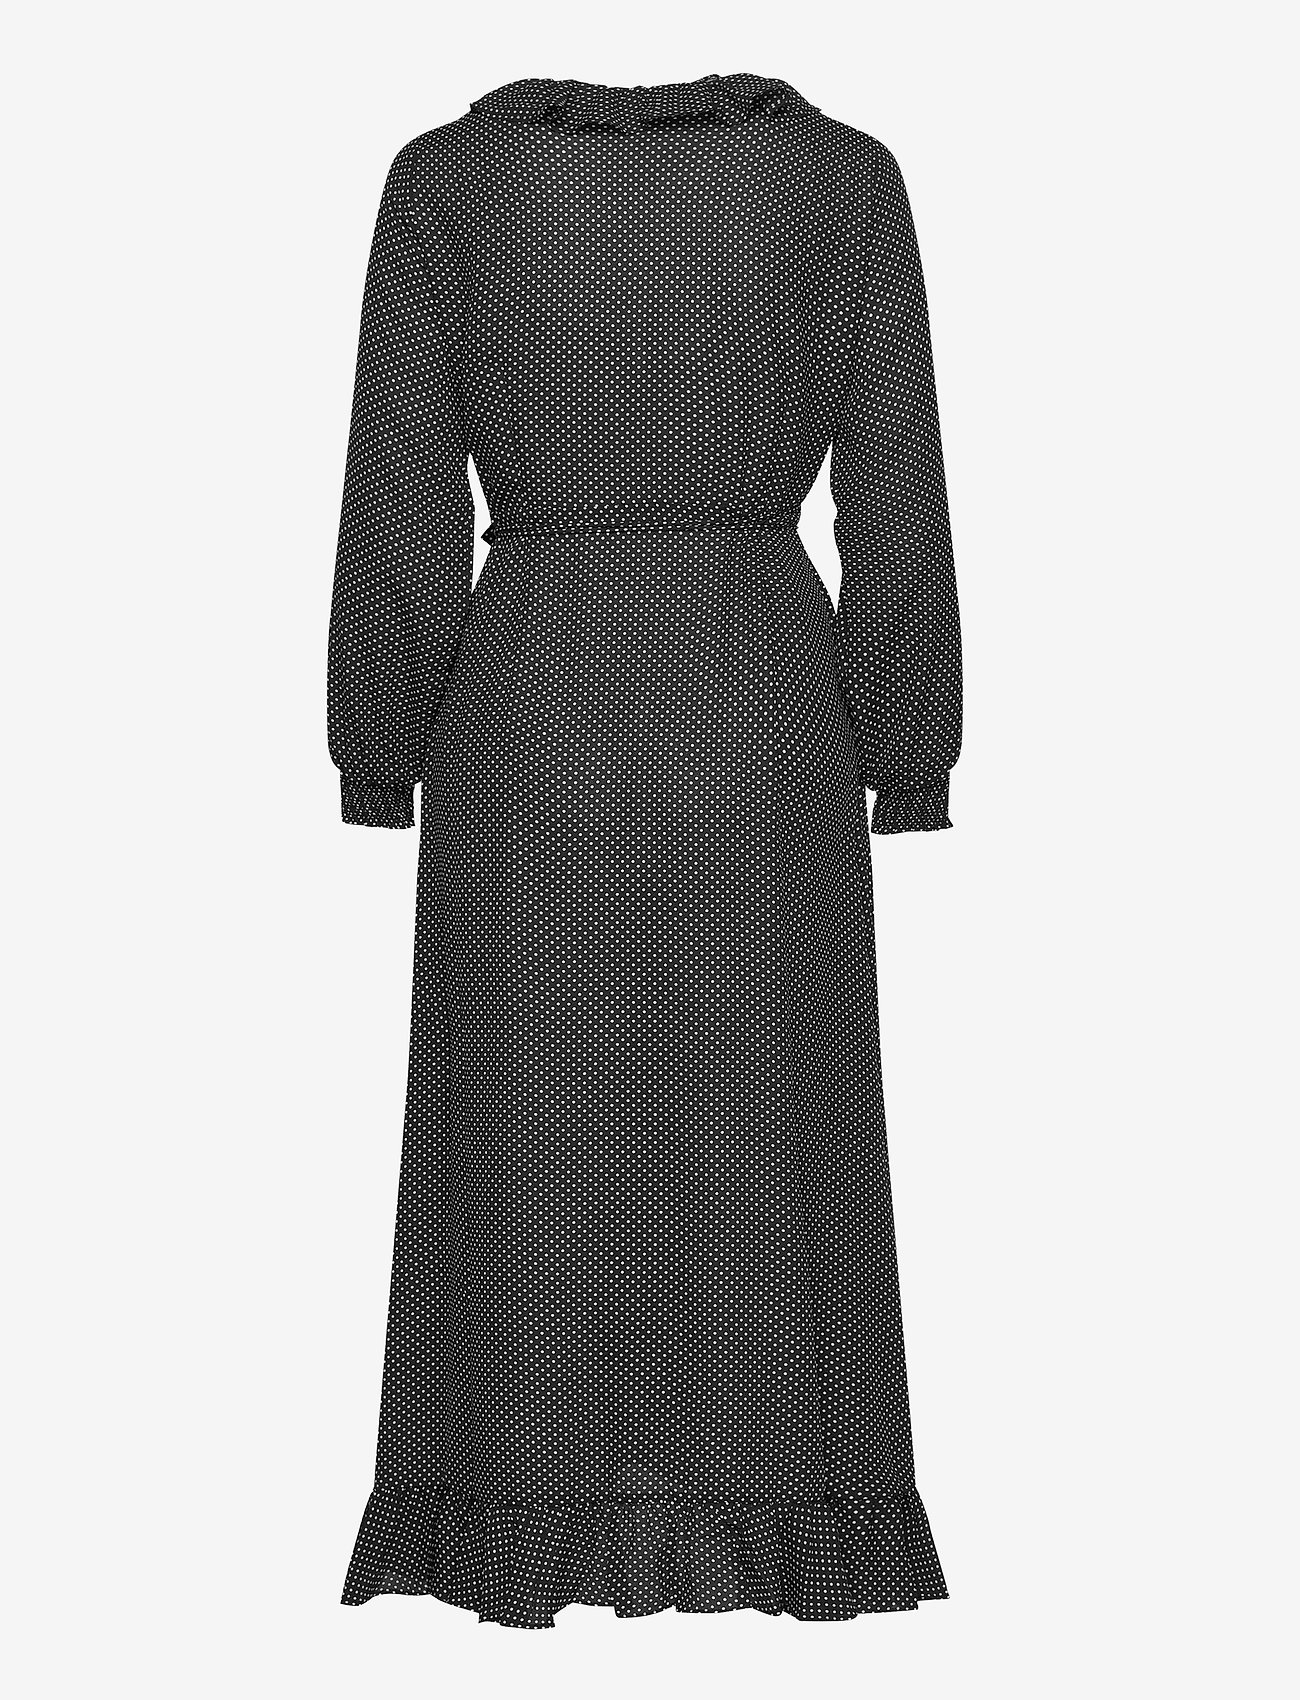 Just Female - Niro maxi wrap dress - omlottklänningar - black mini dot - 1